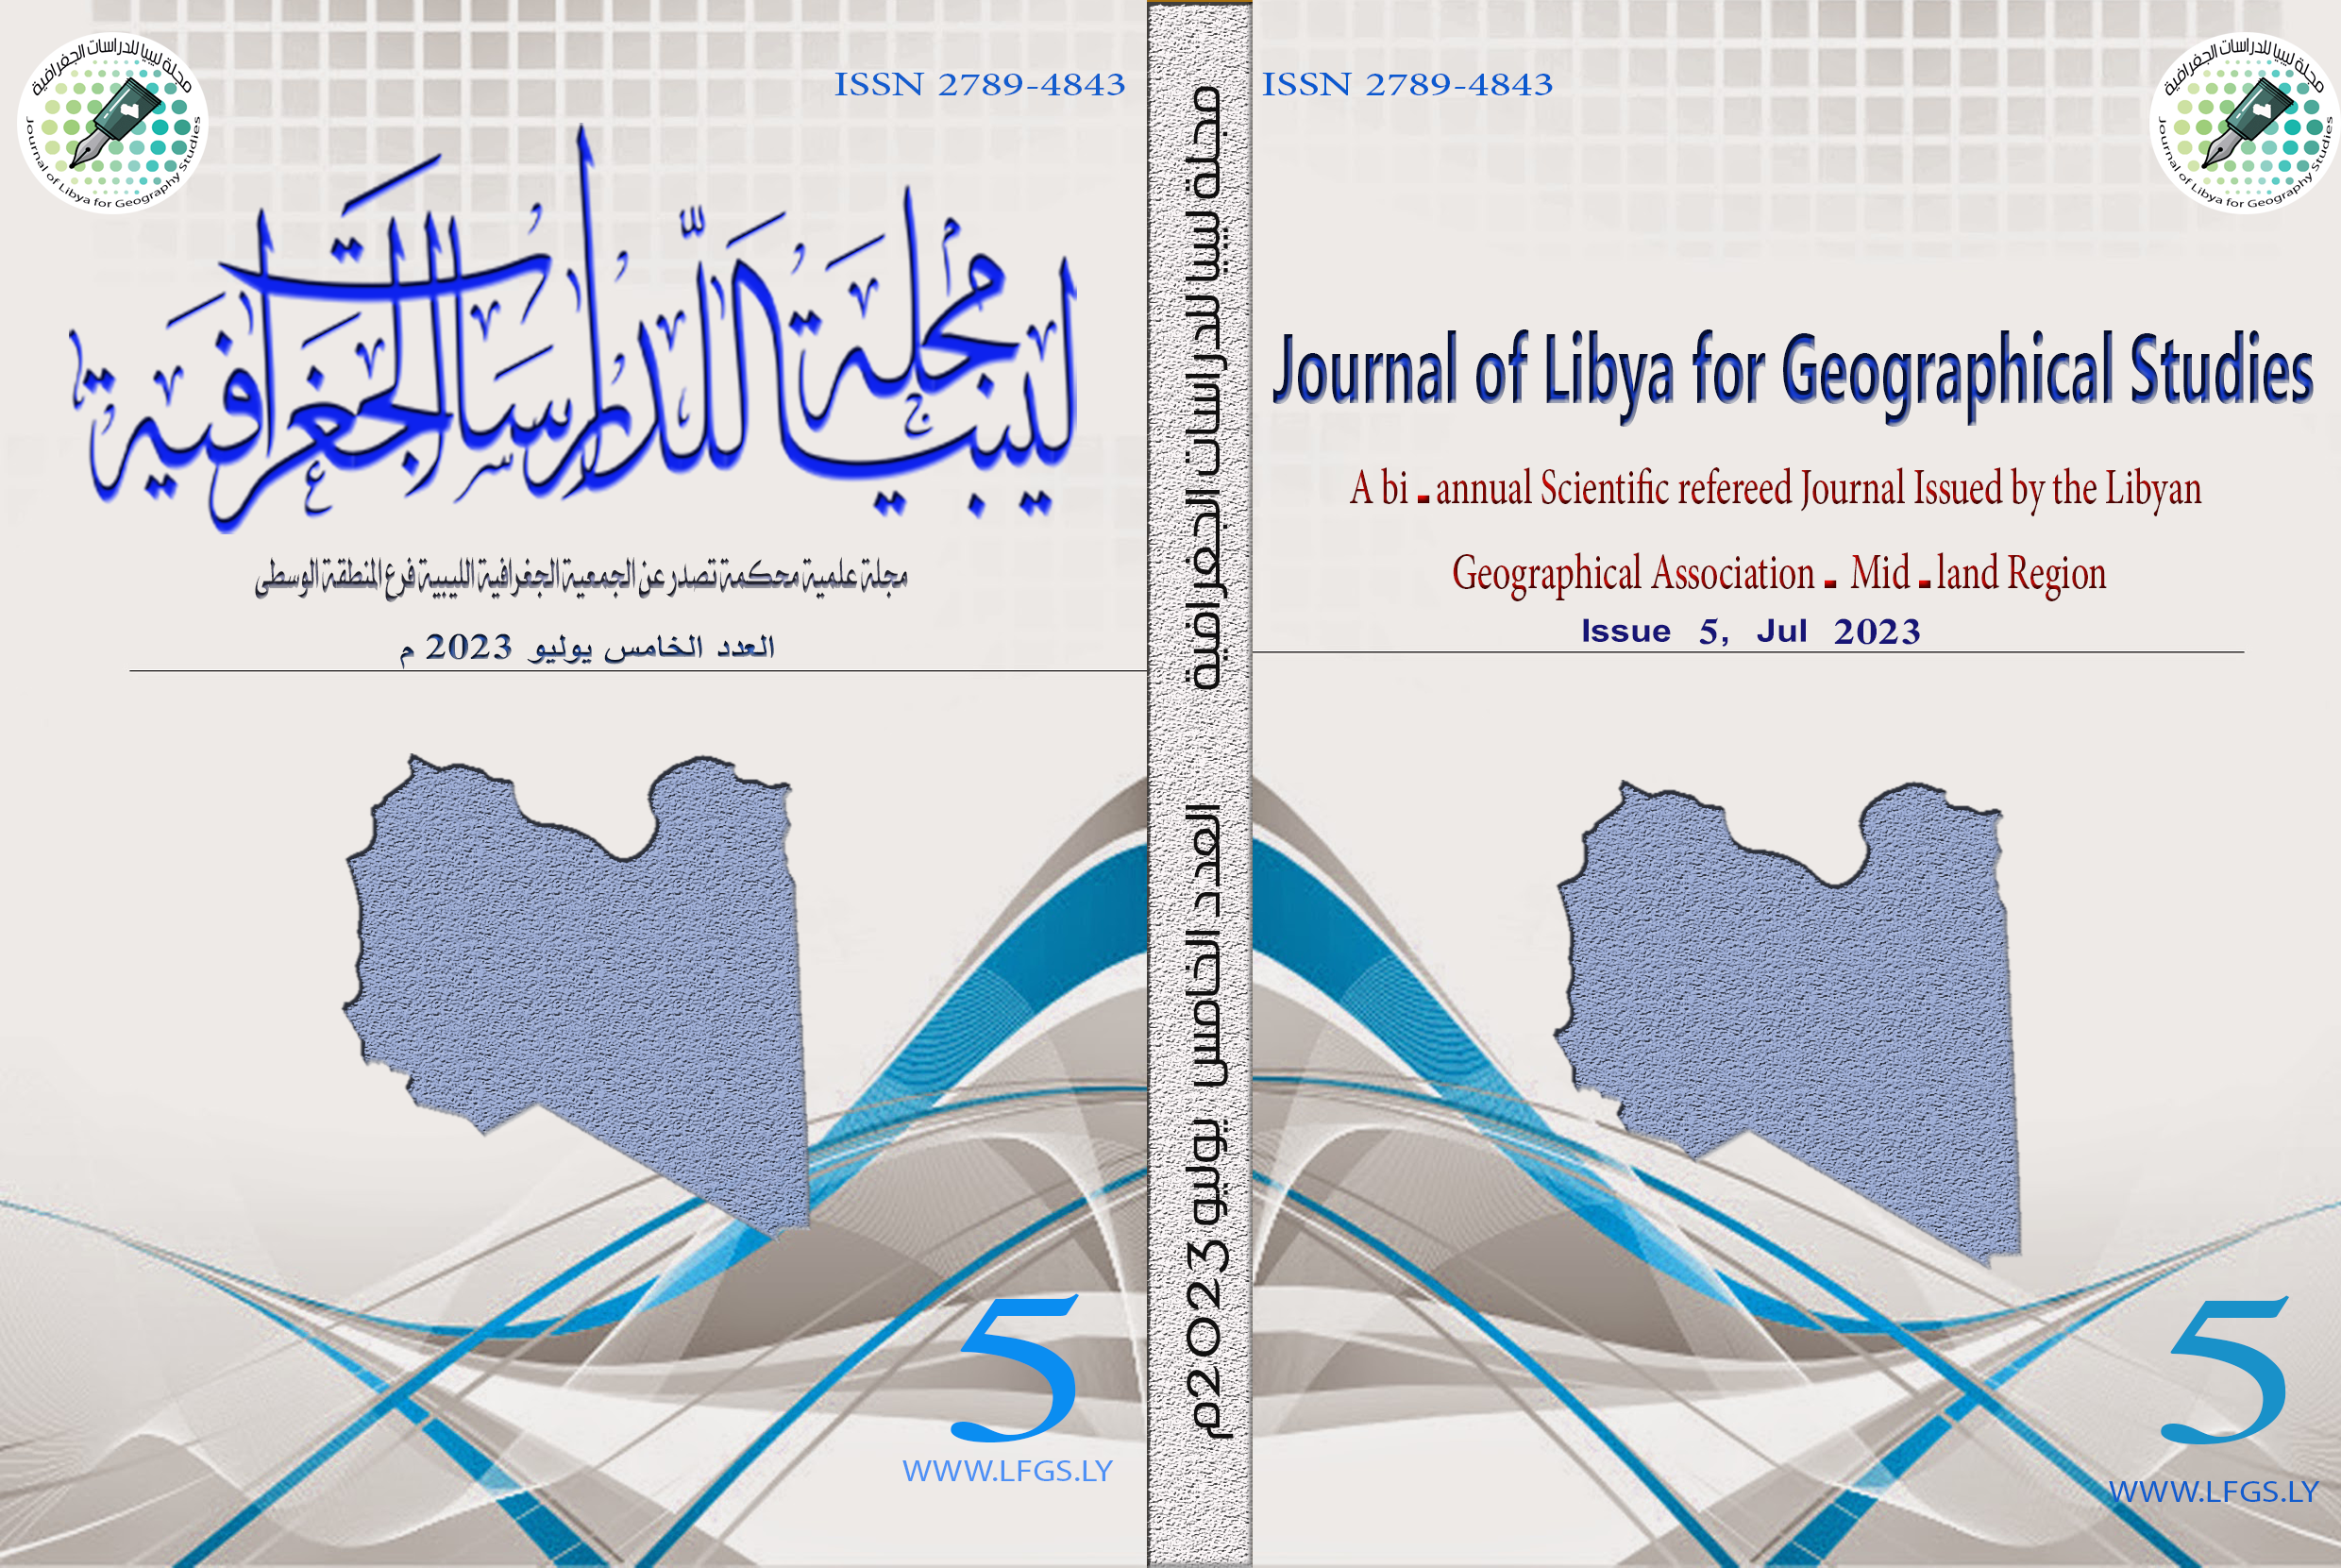 صدور العدد الخامس من مجلة ليبيا للدراسات الجغرافية والتي تصدر عن الجمعية الجغرافية في المنطقة الوسطى